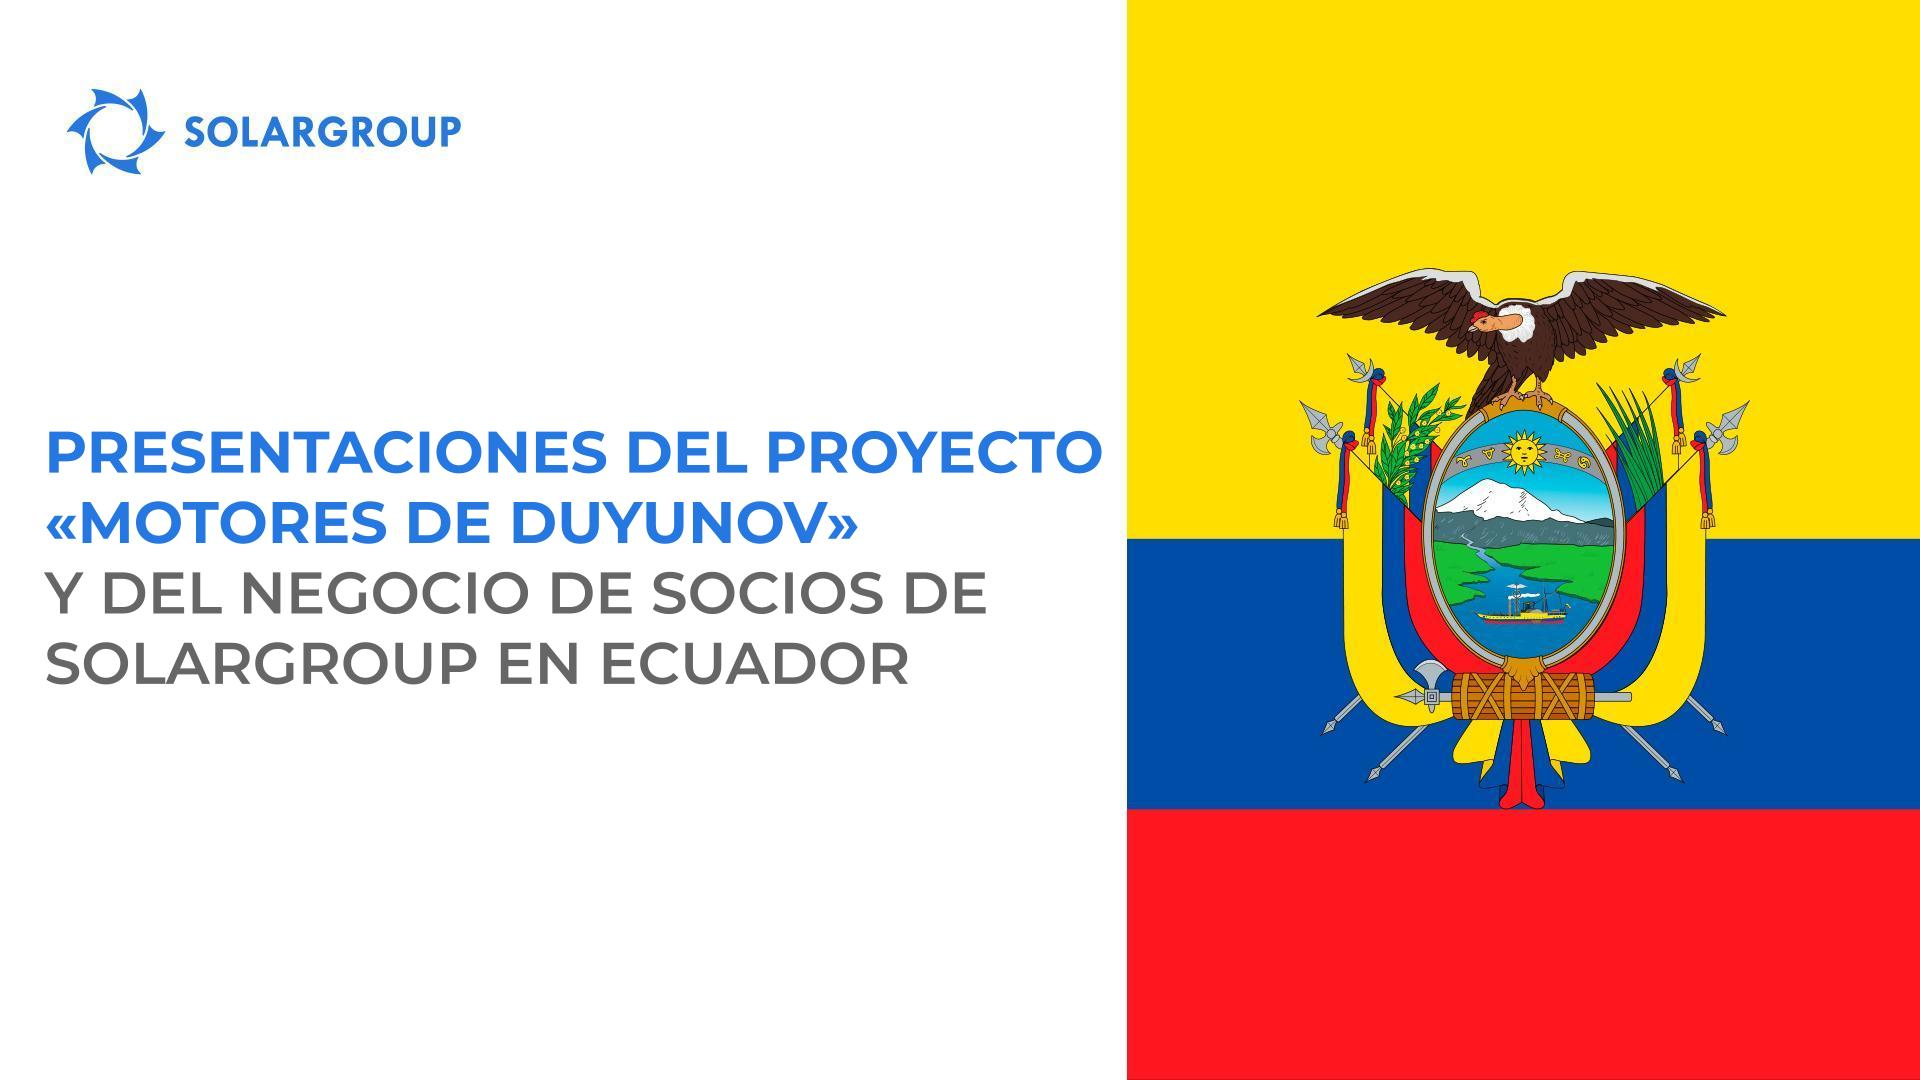 Presentaciones del proyecto "Motores de Duyunov" y del negocio de socios de SOLARGROUP en Ecuador